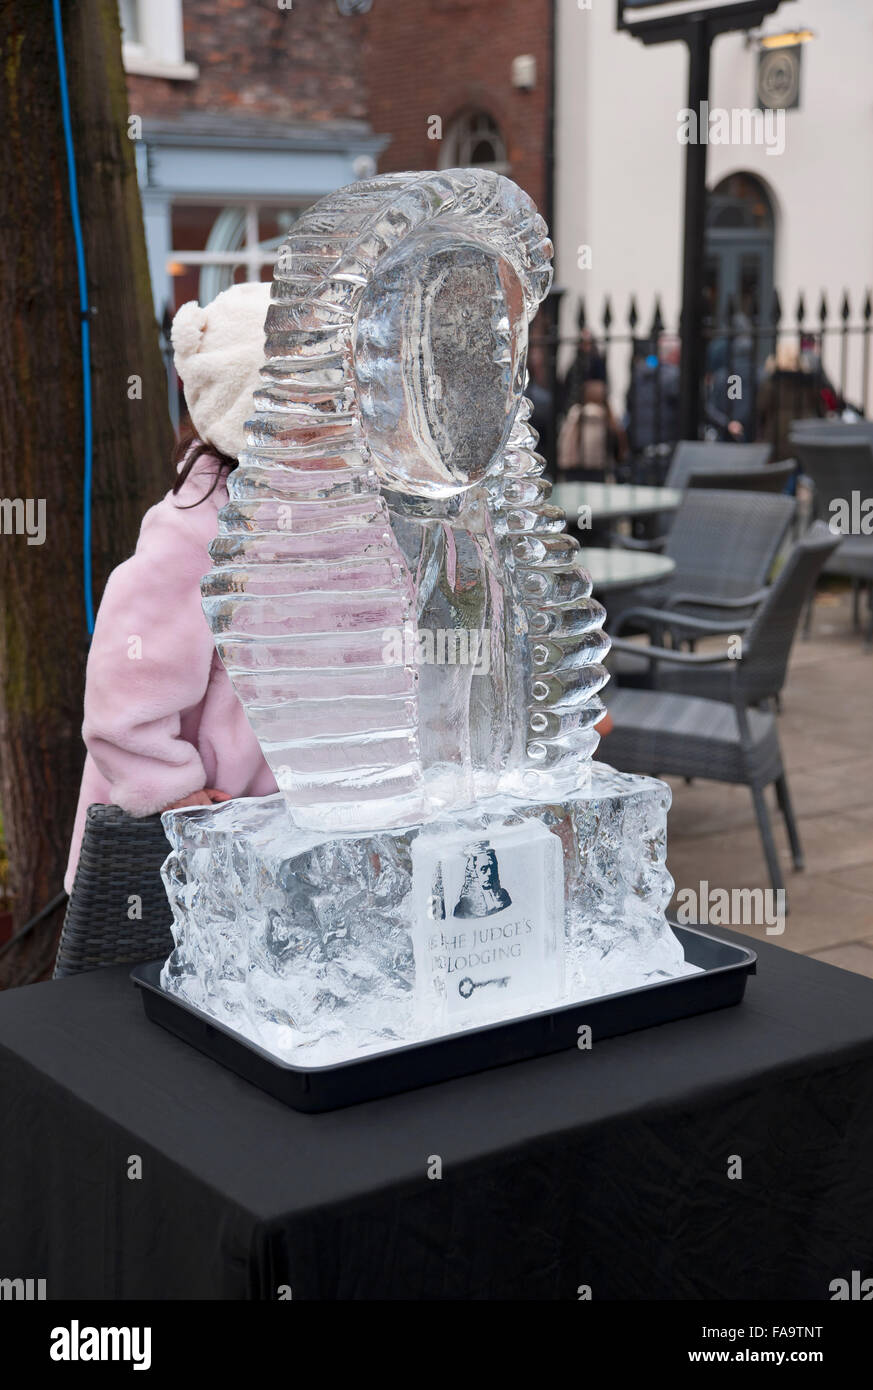 Sculpture sur glace d'une perruque de juges sur la piste de glace en hiver York North Yorkshire Angleterre Royaume-Uni GB Grande-Bretagne Banque D'Images